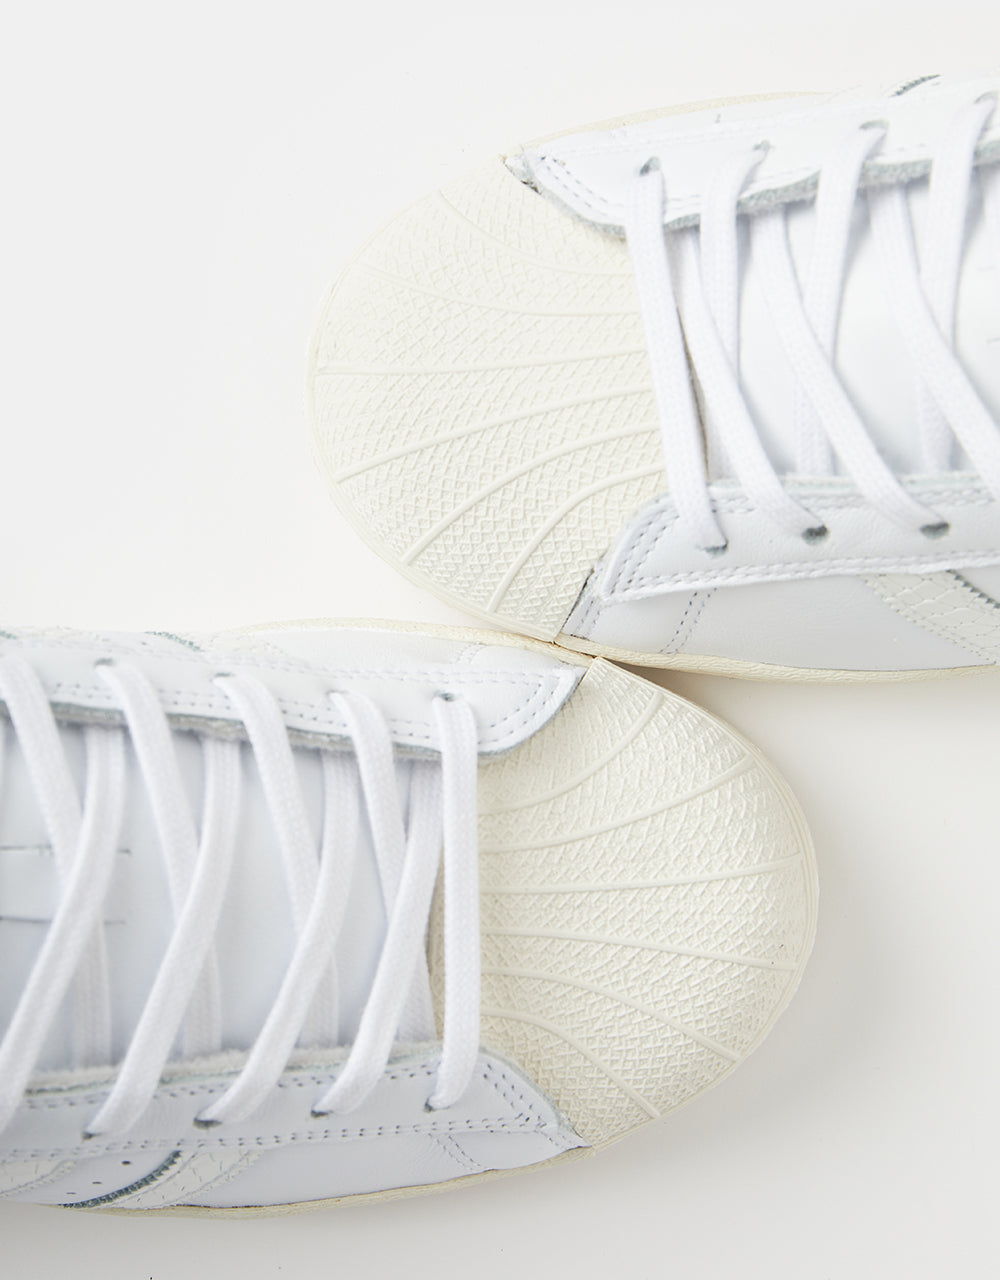 adidas Superstar ADV Skate Shoes - White/White/Gold Metallic